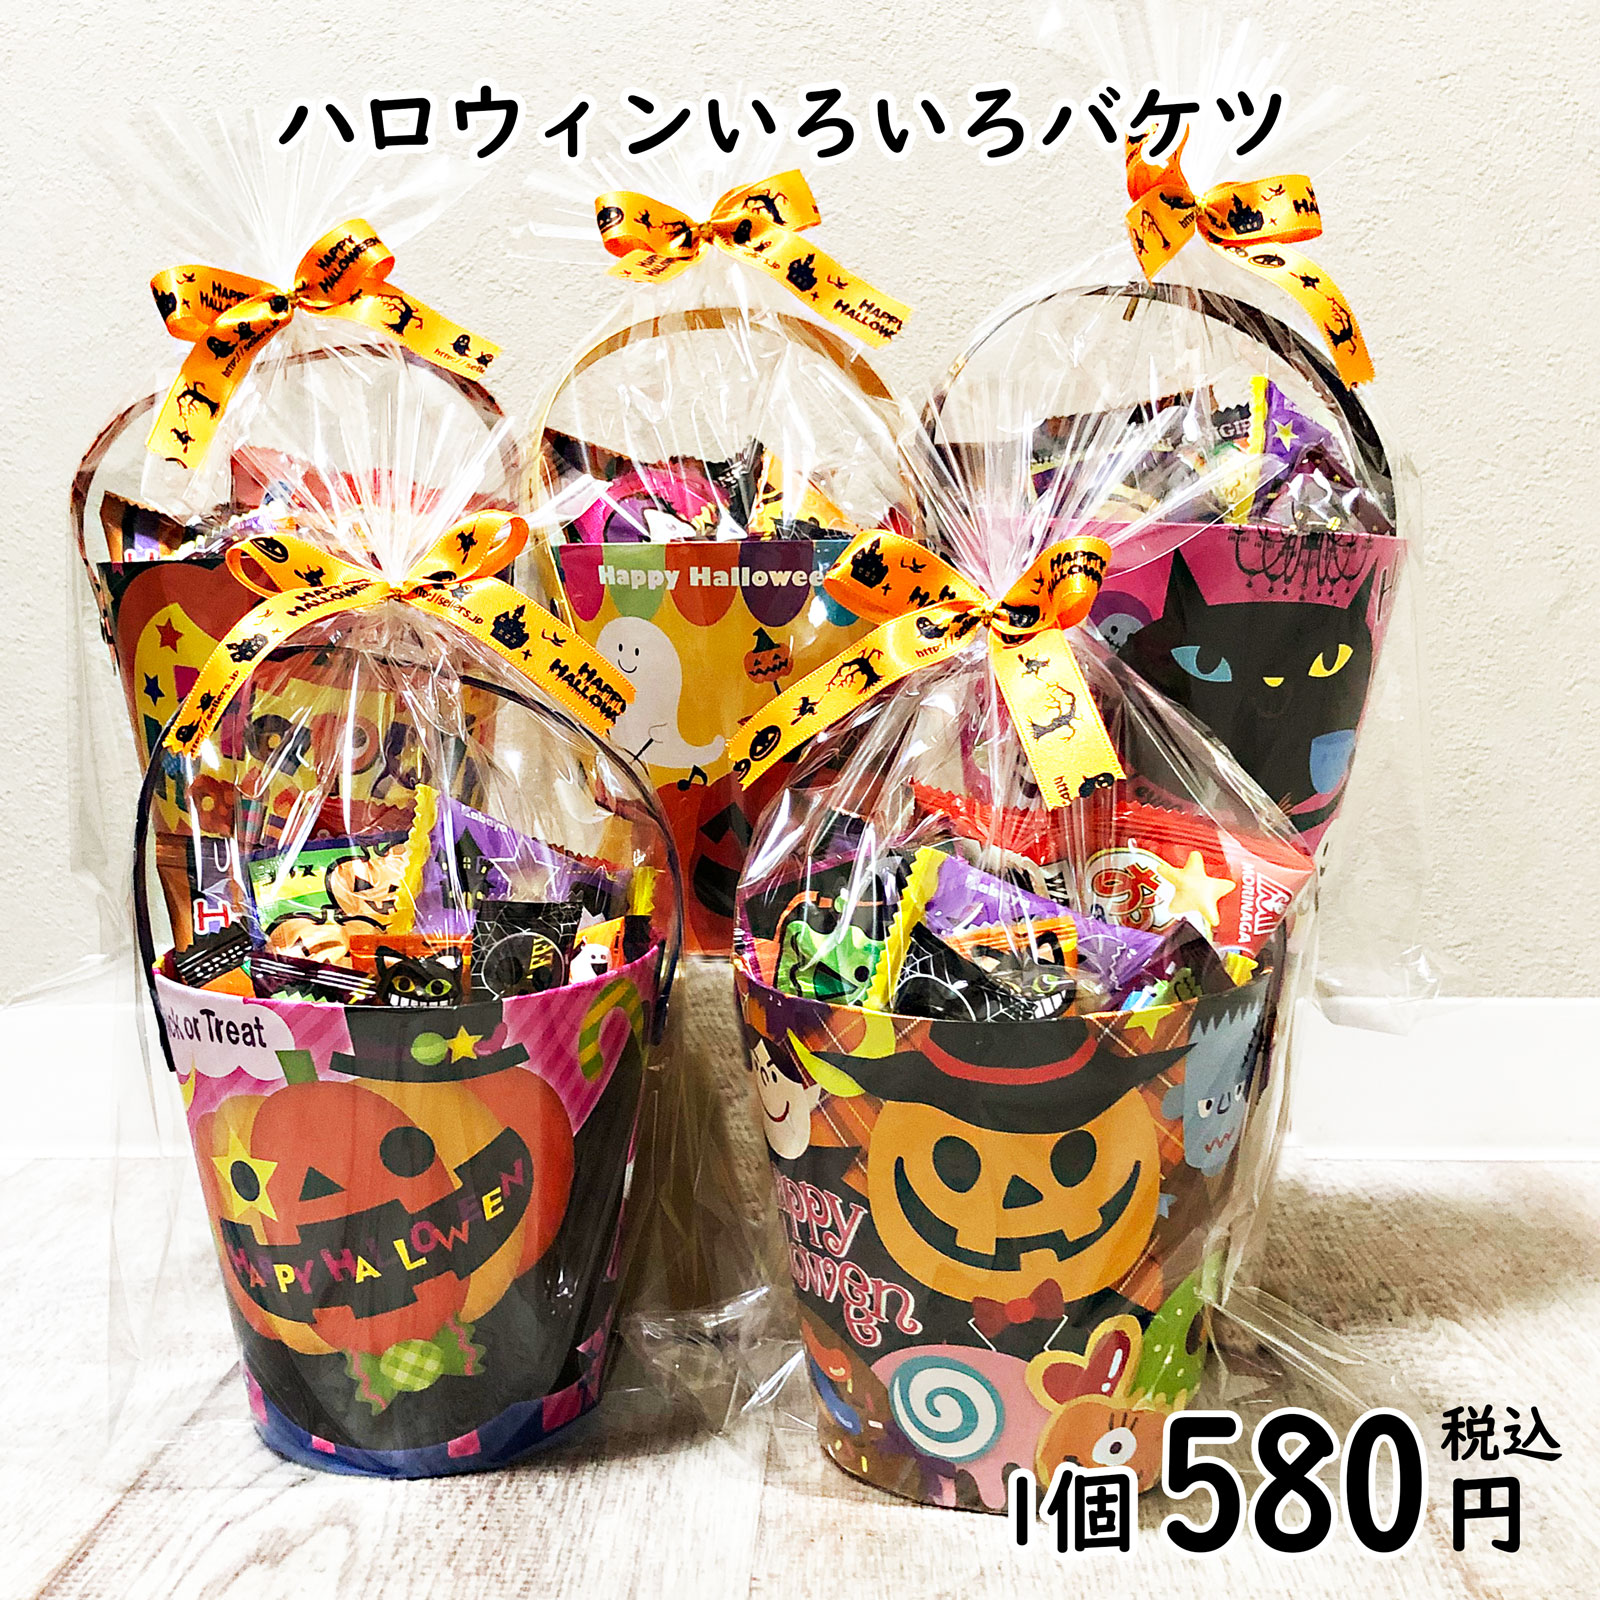 ハロウィンお菓子だけ詰め合わせ 贈答品 1万円以上で送料無料 ハロウィン お菓子 Halloween お菓子をたっぷりセラーズオリジナル 購買 ハロウィンバケツ 詰め合わせ